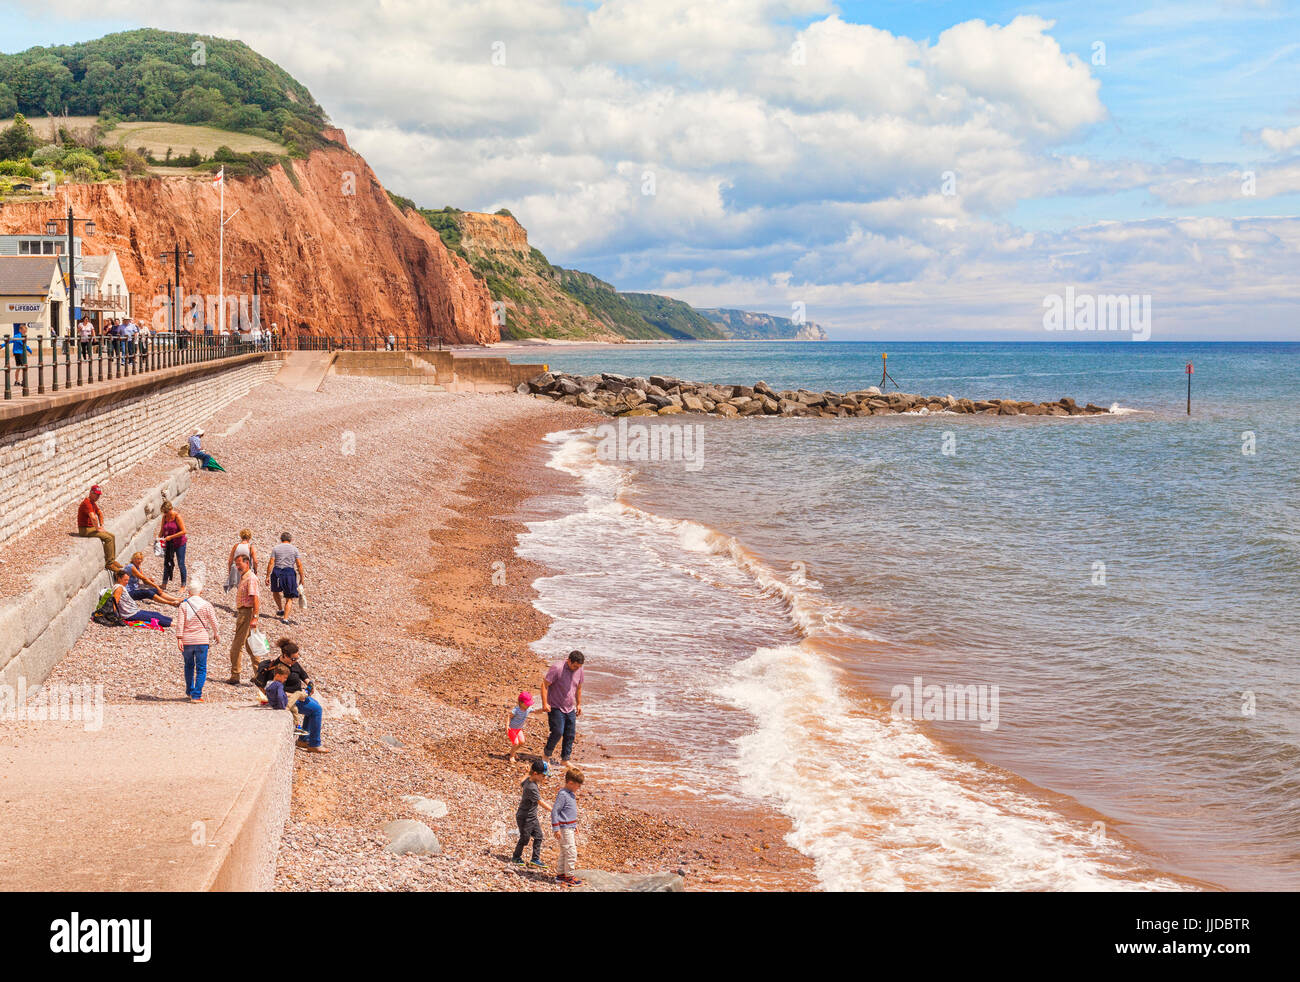 El 3 de julio de 2017: Sidmouth, Dorset, Inglaterra, Reino Unido - Los visitantes en la playa de guijarros en un brillante día de verano. Foto de stock